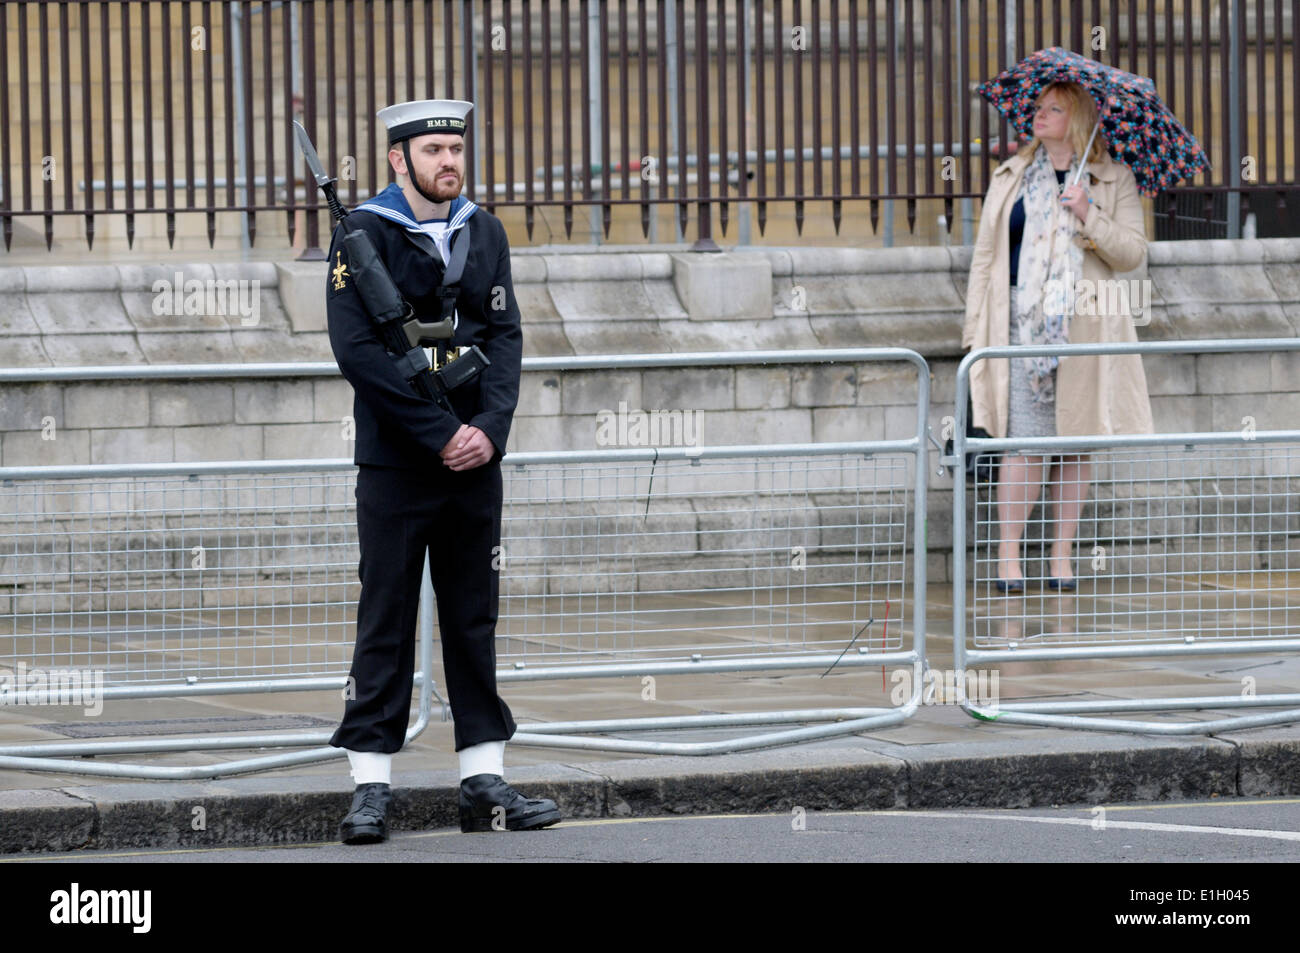 Londres, Royaume-Uni. 04 Juin, 2014. L'état d'ouverture du Parlement, Westminster, Londres. Marin sur guard et contemple avec parapluie Banque D'Images